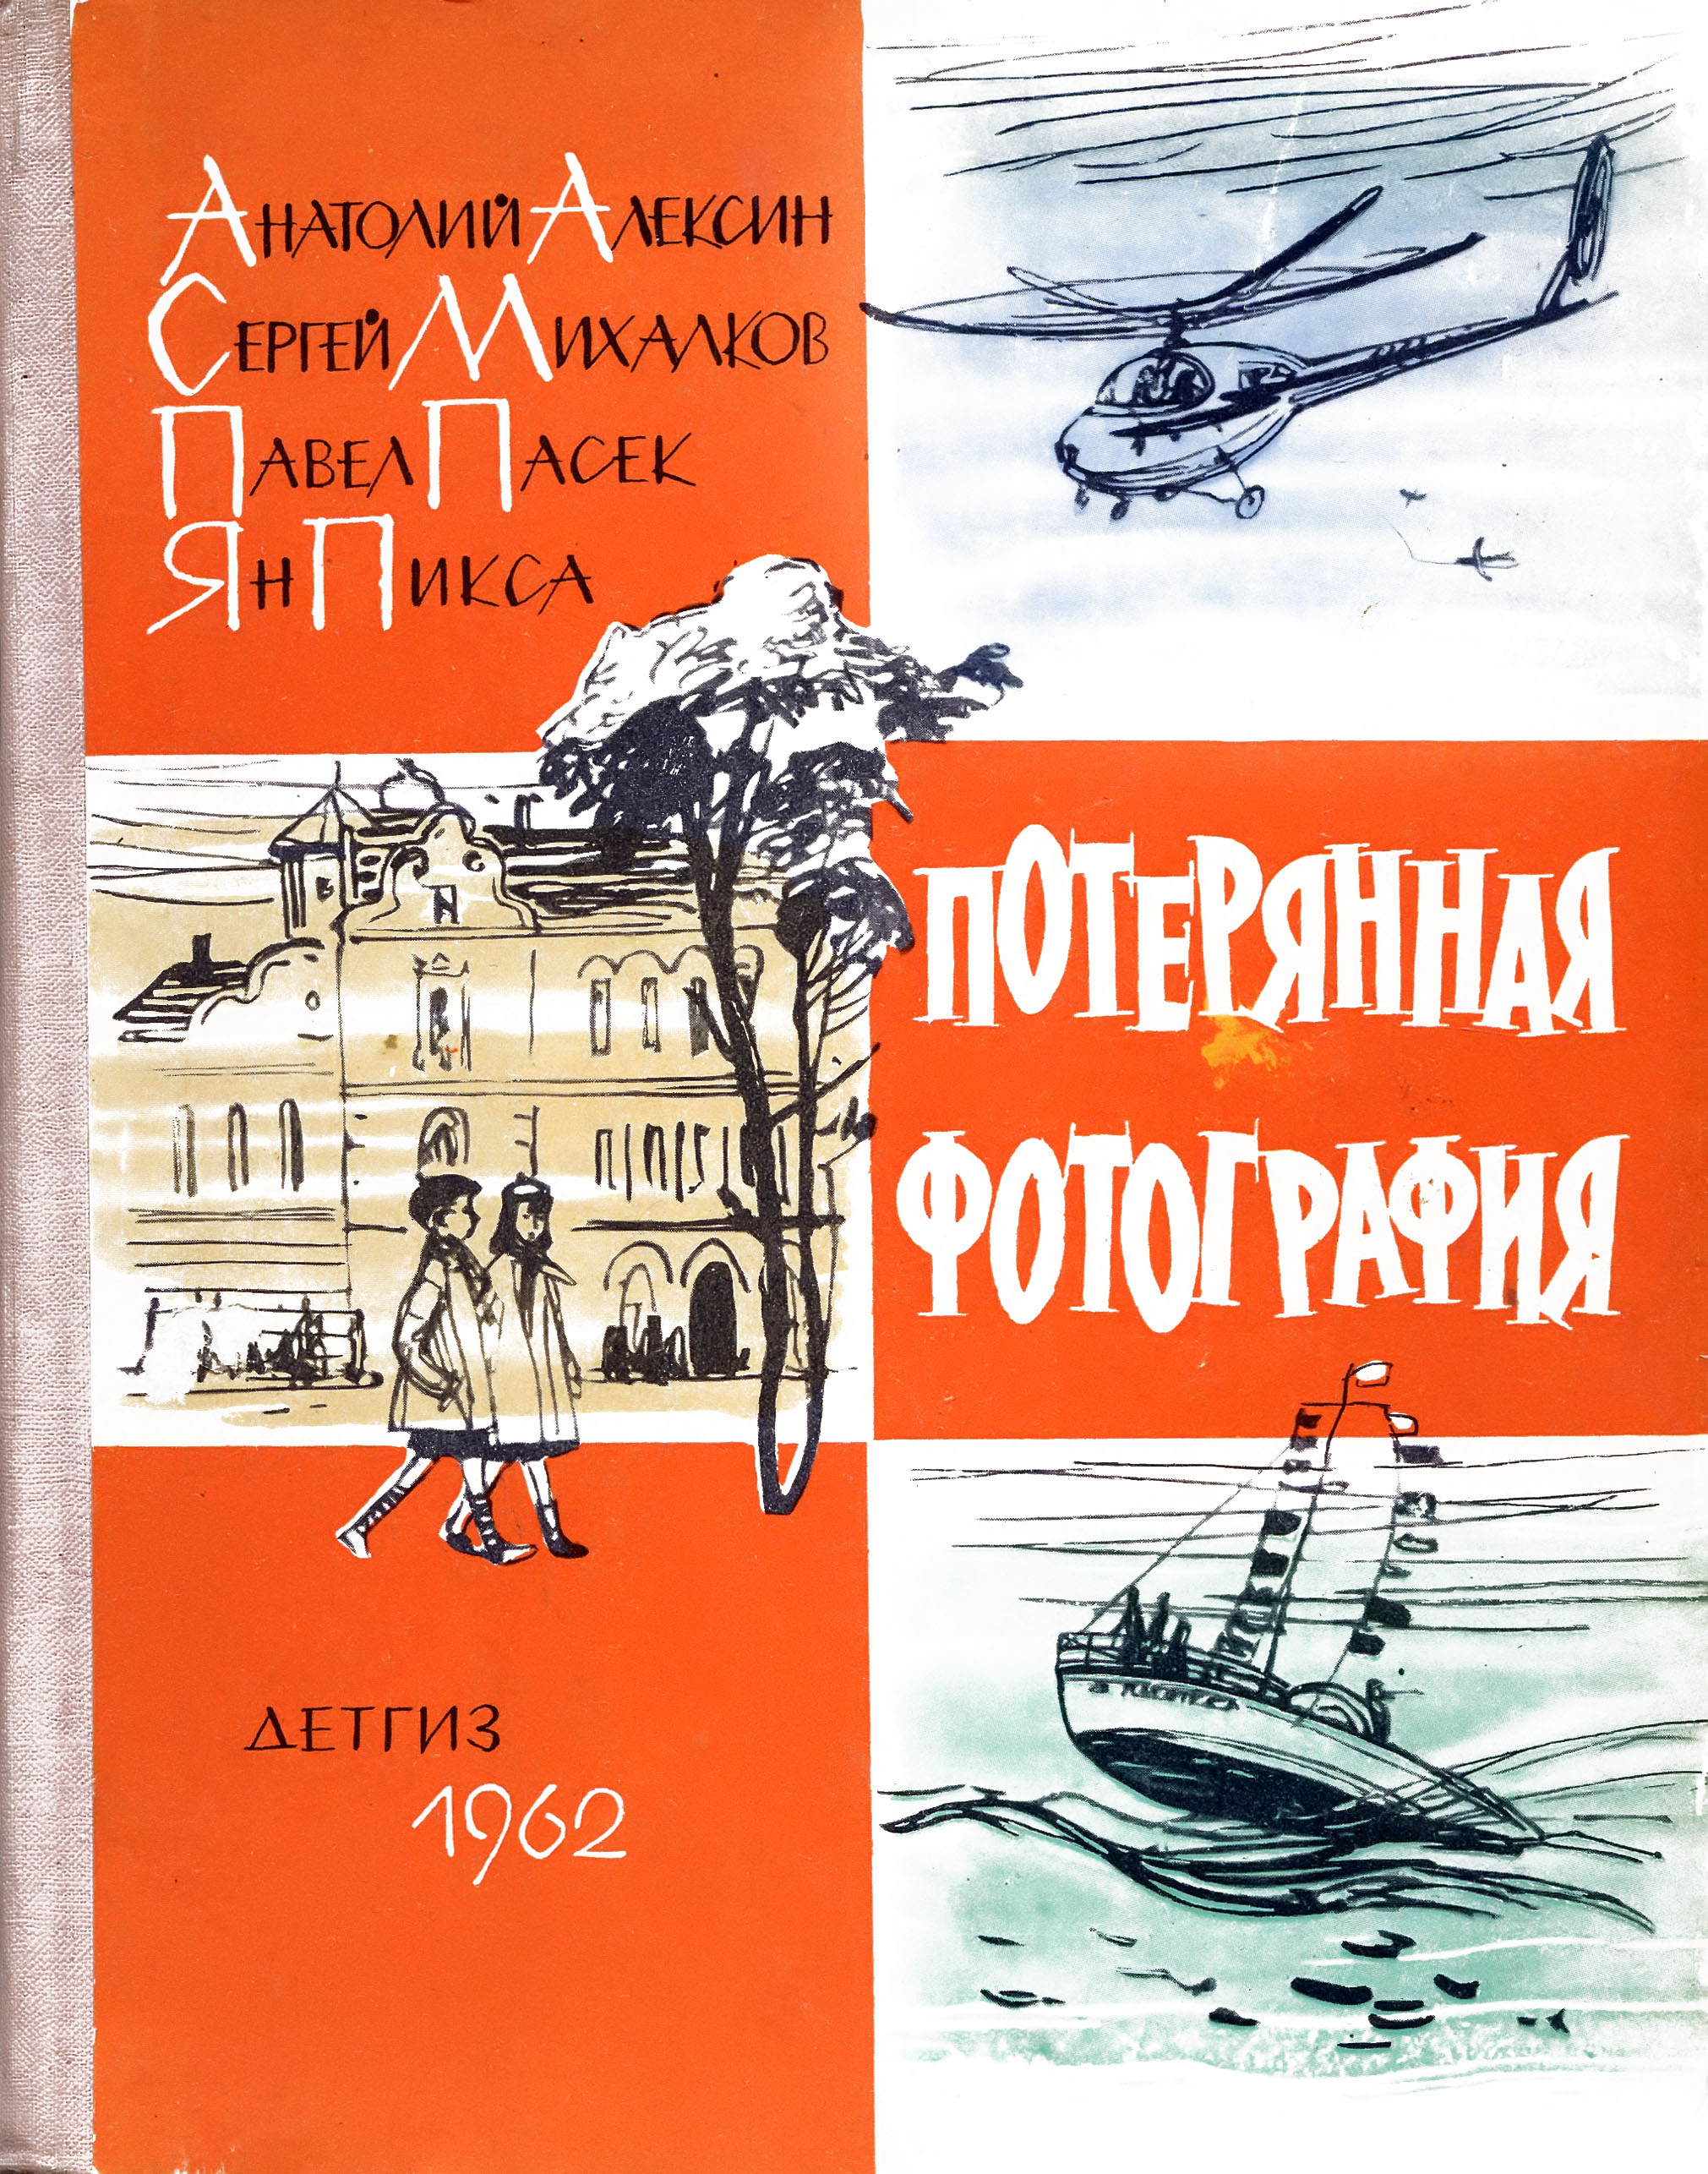 Обложки книг много картинки Анатолия Алексина